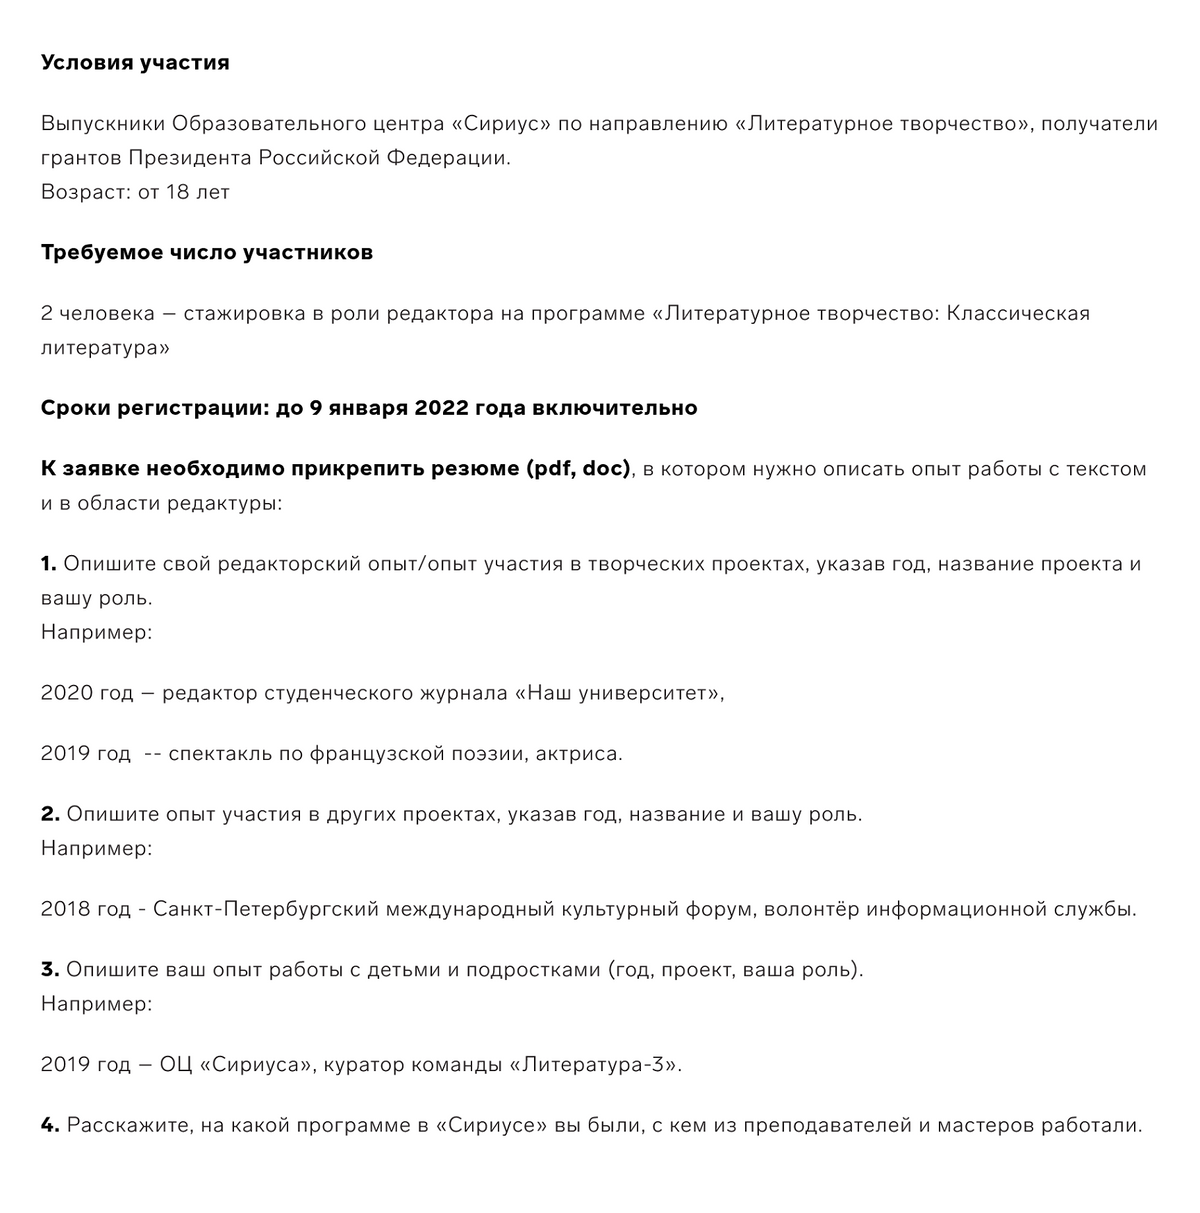 Условия и тебования для&nbsp;участия в стажировке. Источник: sochisirius.ru